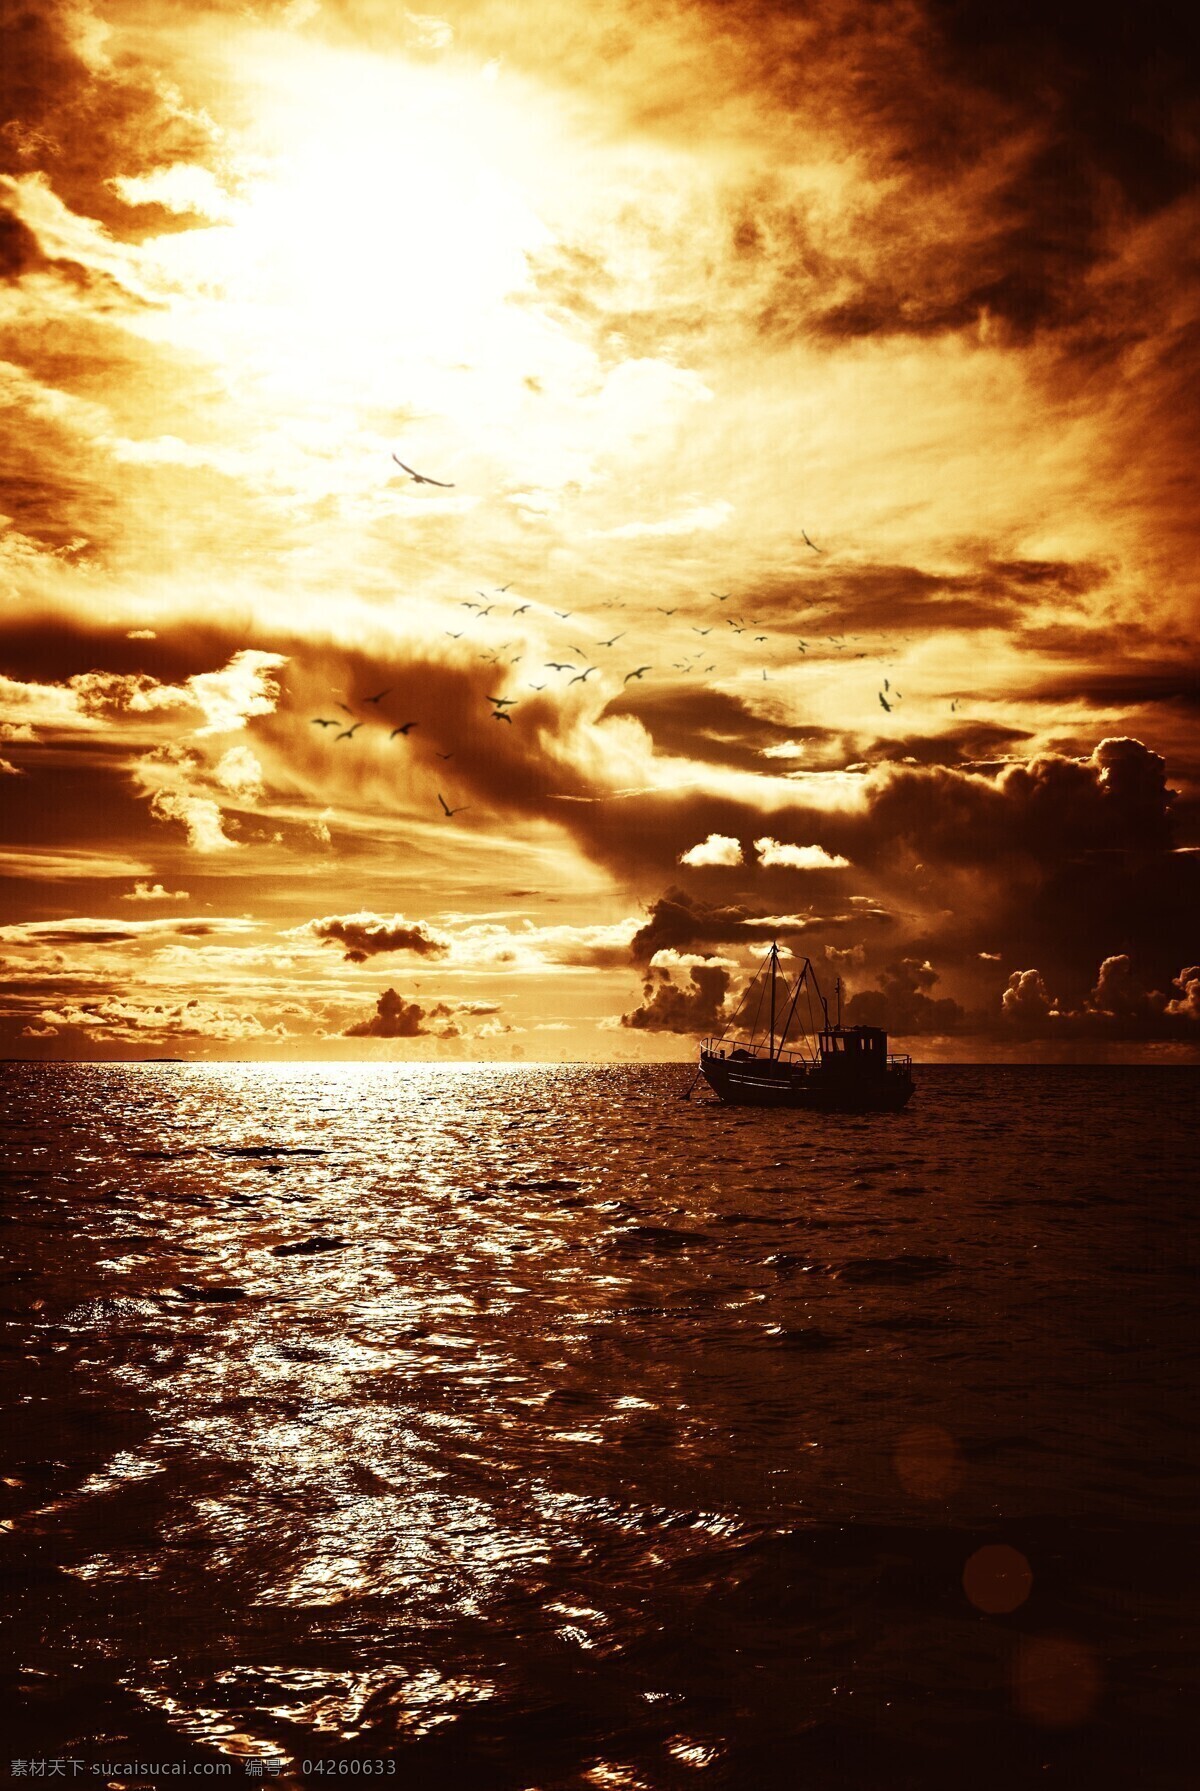 大海 航行 渔船 大海风景 海面风景 海洋风景 汪洋 海景 美丽风景 海洋海边 自然景观 黑色